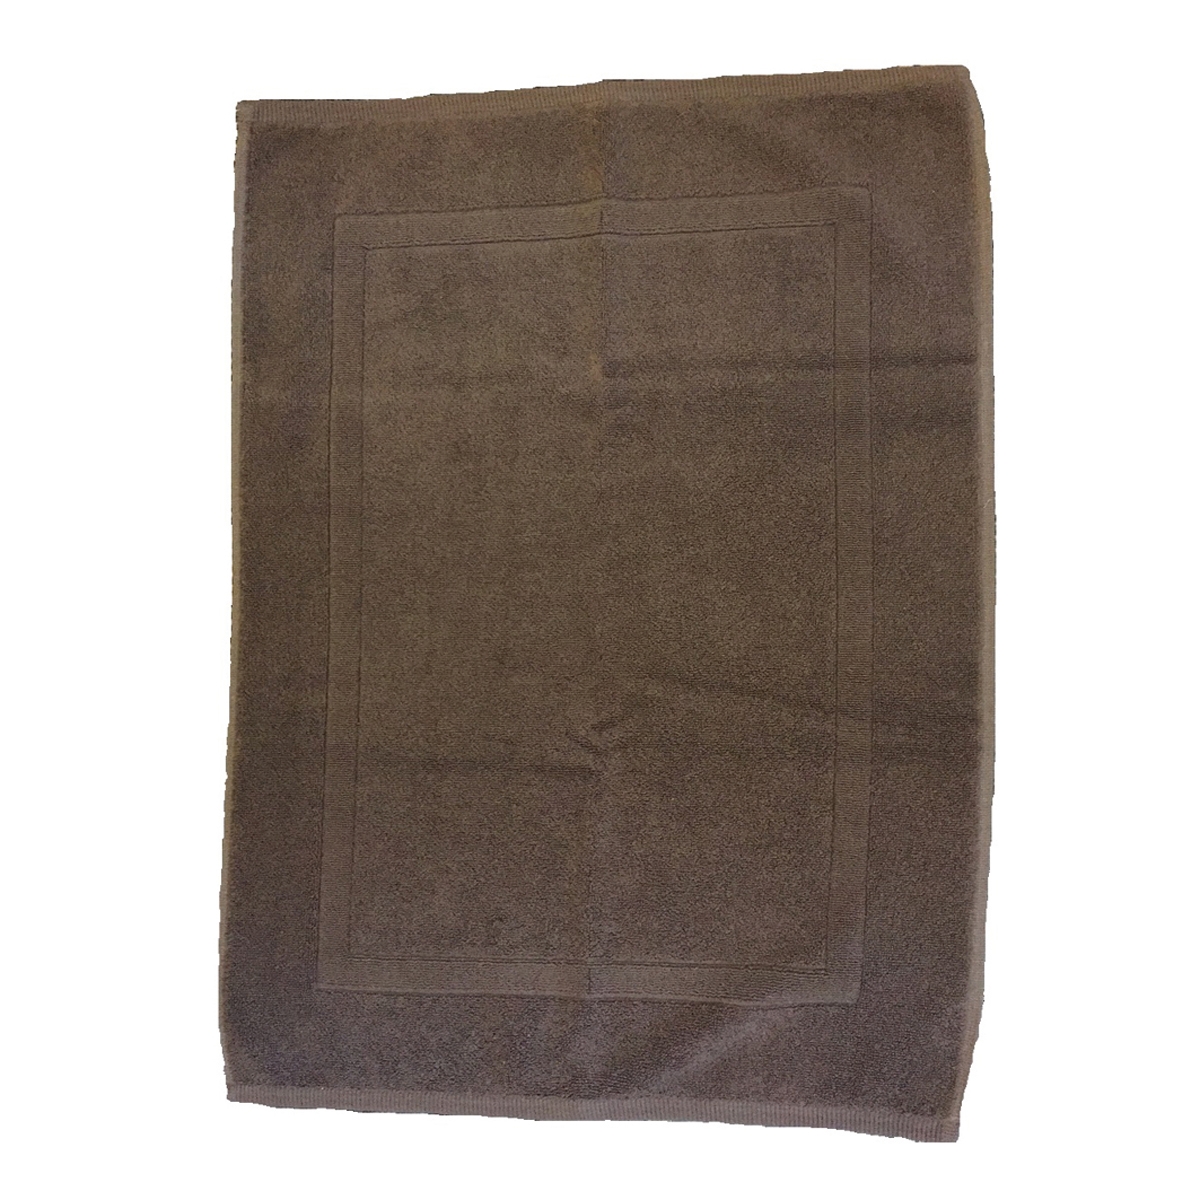 Tappeto bagno rettangolare Eponge in cotone marrone 80 x 50 cm - 1